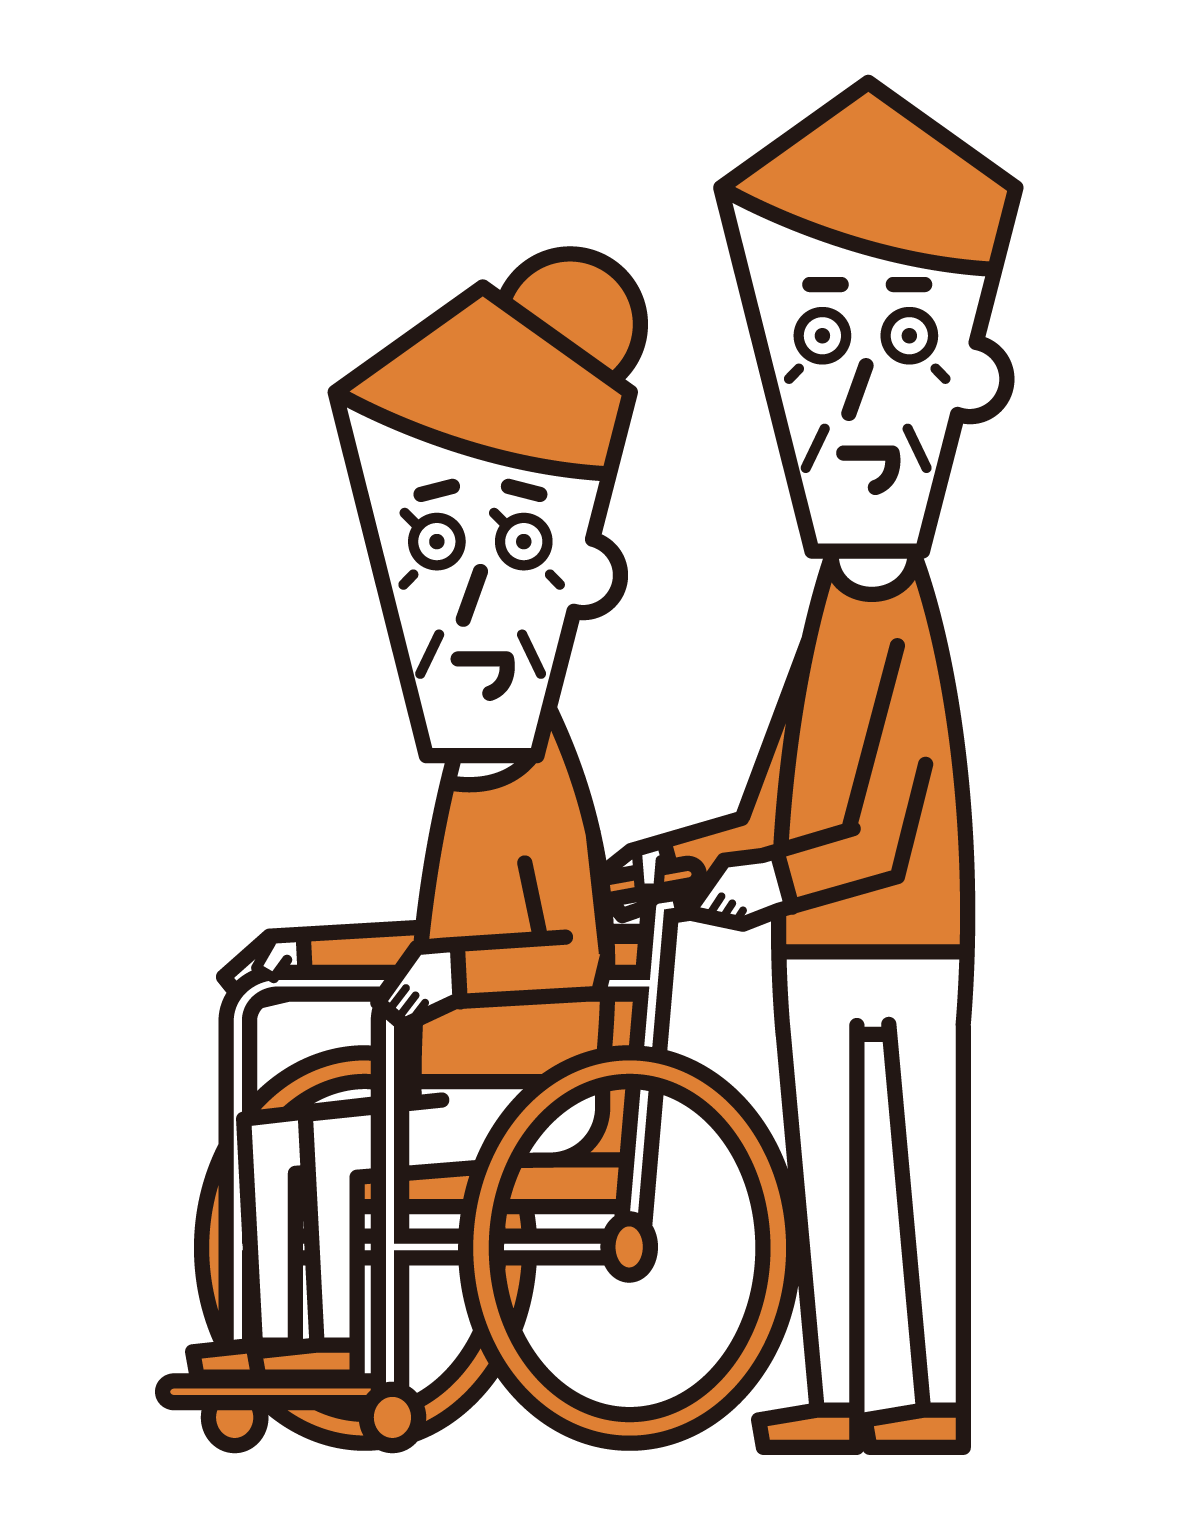 휠체어를 탄 사람(할머니)과 푸셔(할아버지)의 그림